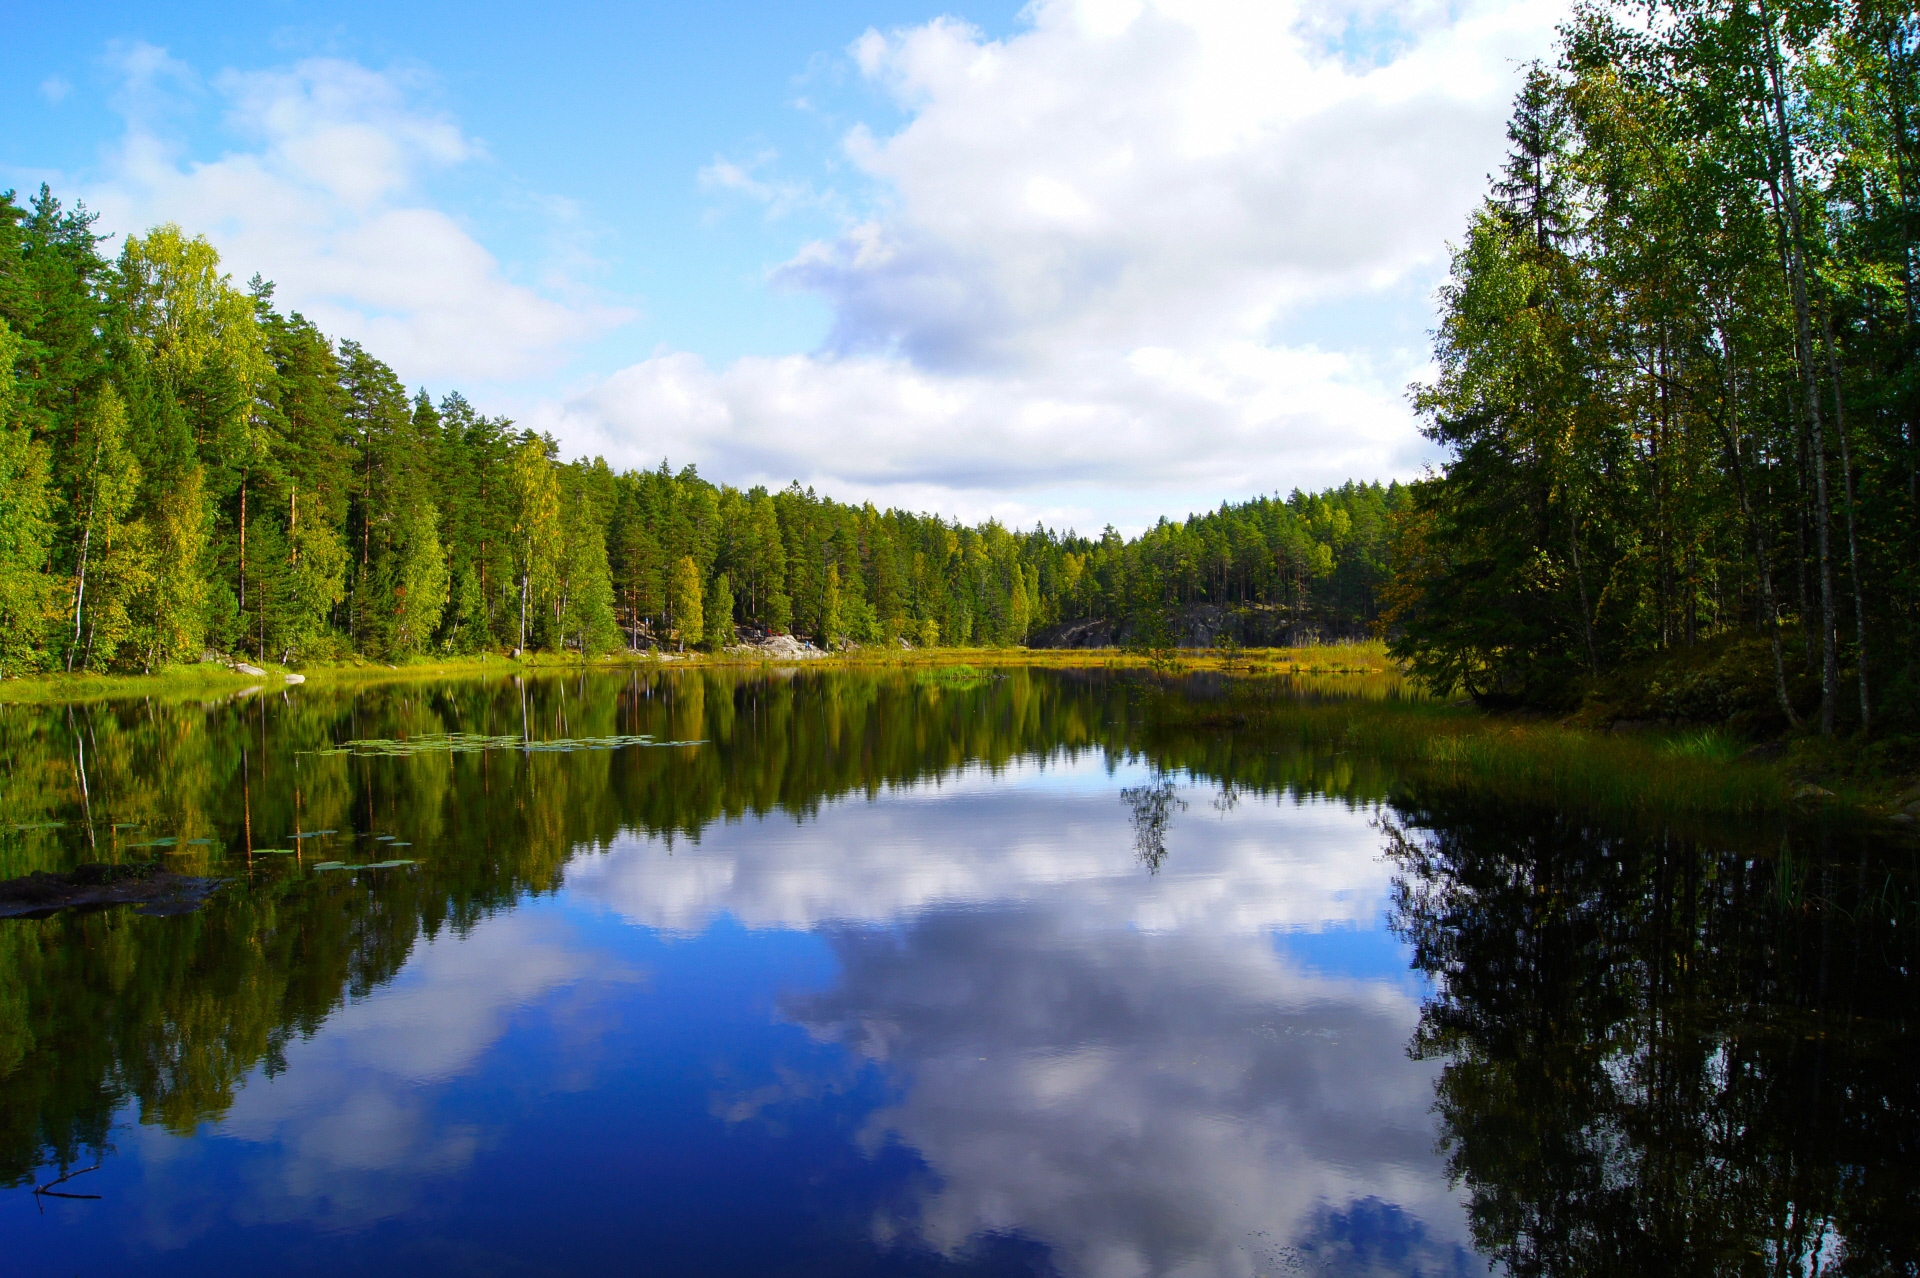 緑に囲まれた大きな湖面に青空に白い雲が映し出されているフィンランドの風景写真